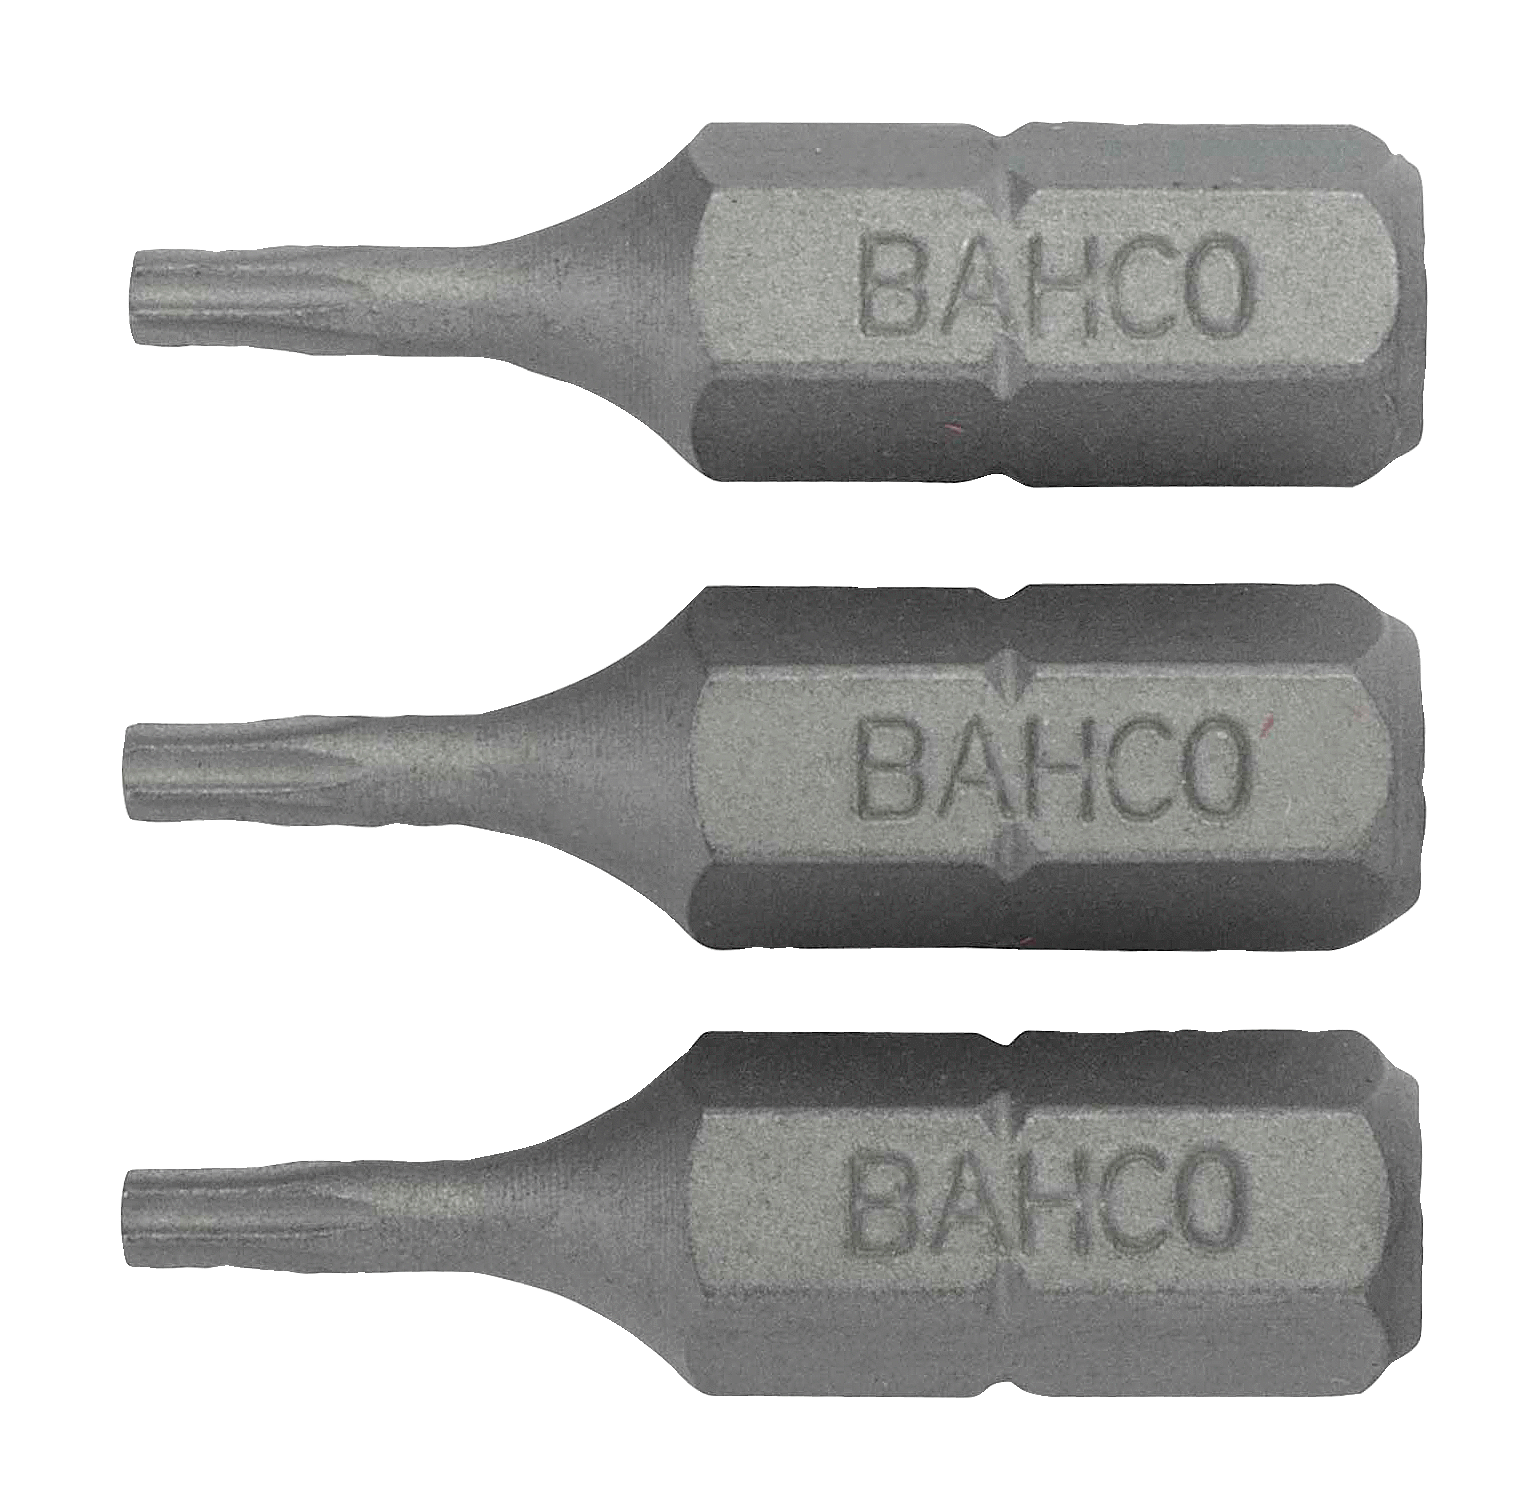 картинка Стандартные биты для отверток Torx® TR, 25 мм BAHCO 59S/TR30-3P от магазина "Элит-инструмент"